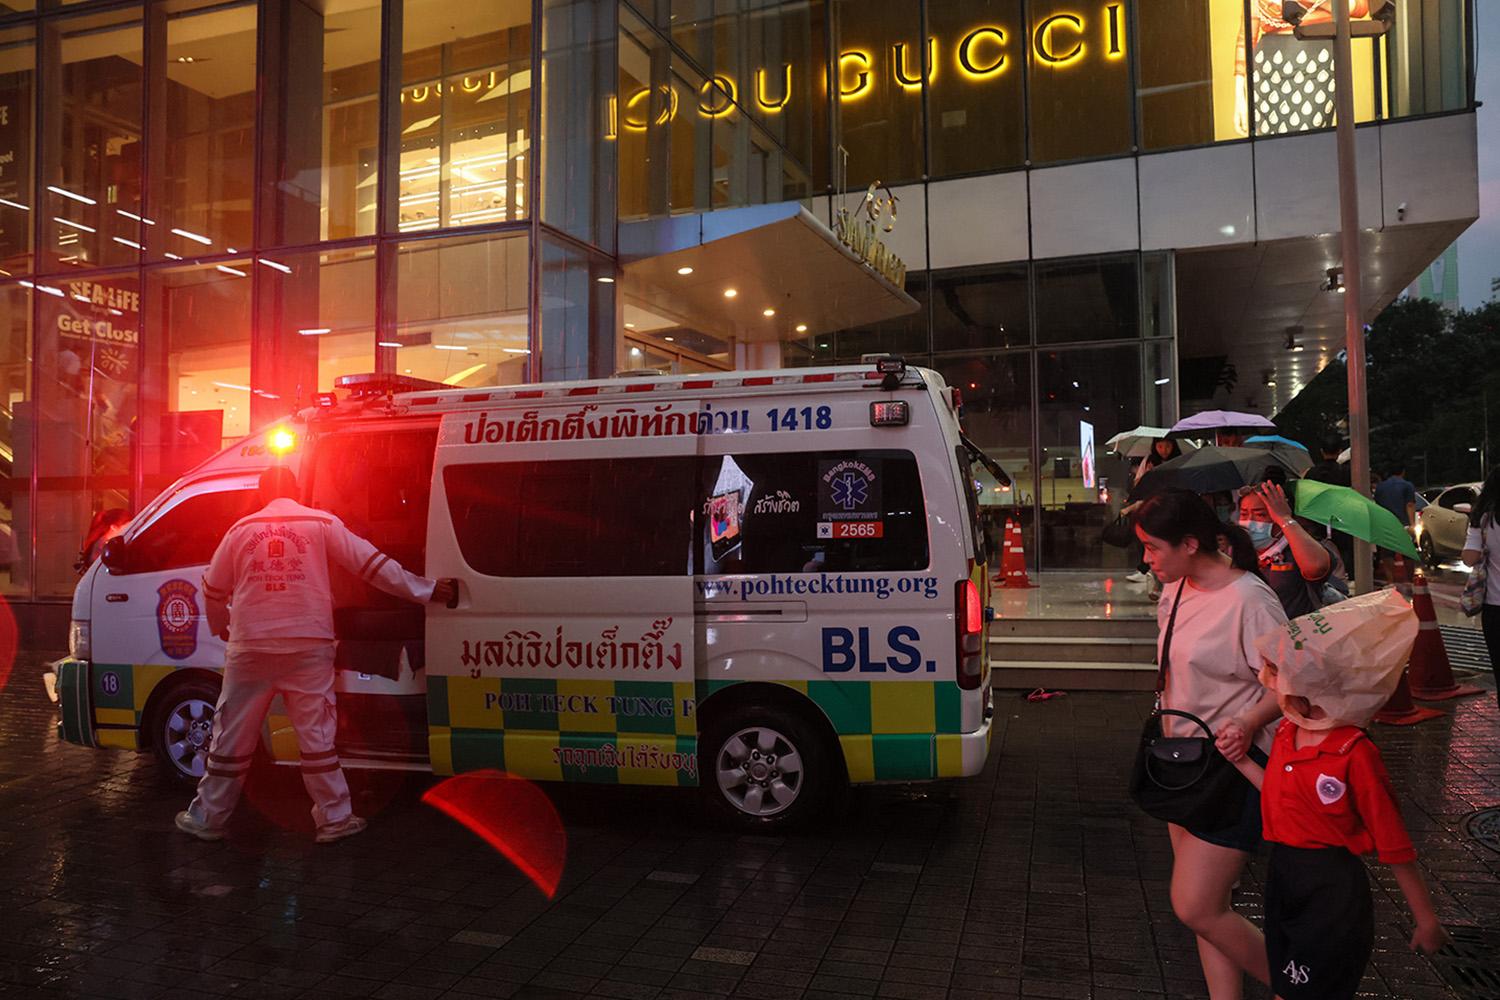 shooting-at-major-bangkok-shopping-mall-kills-2-people-SPACEBAR-Hero.jpg